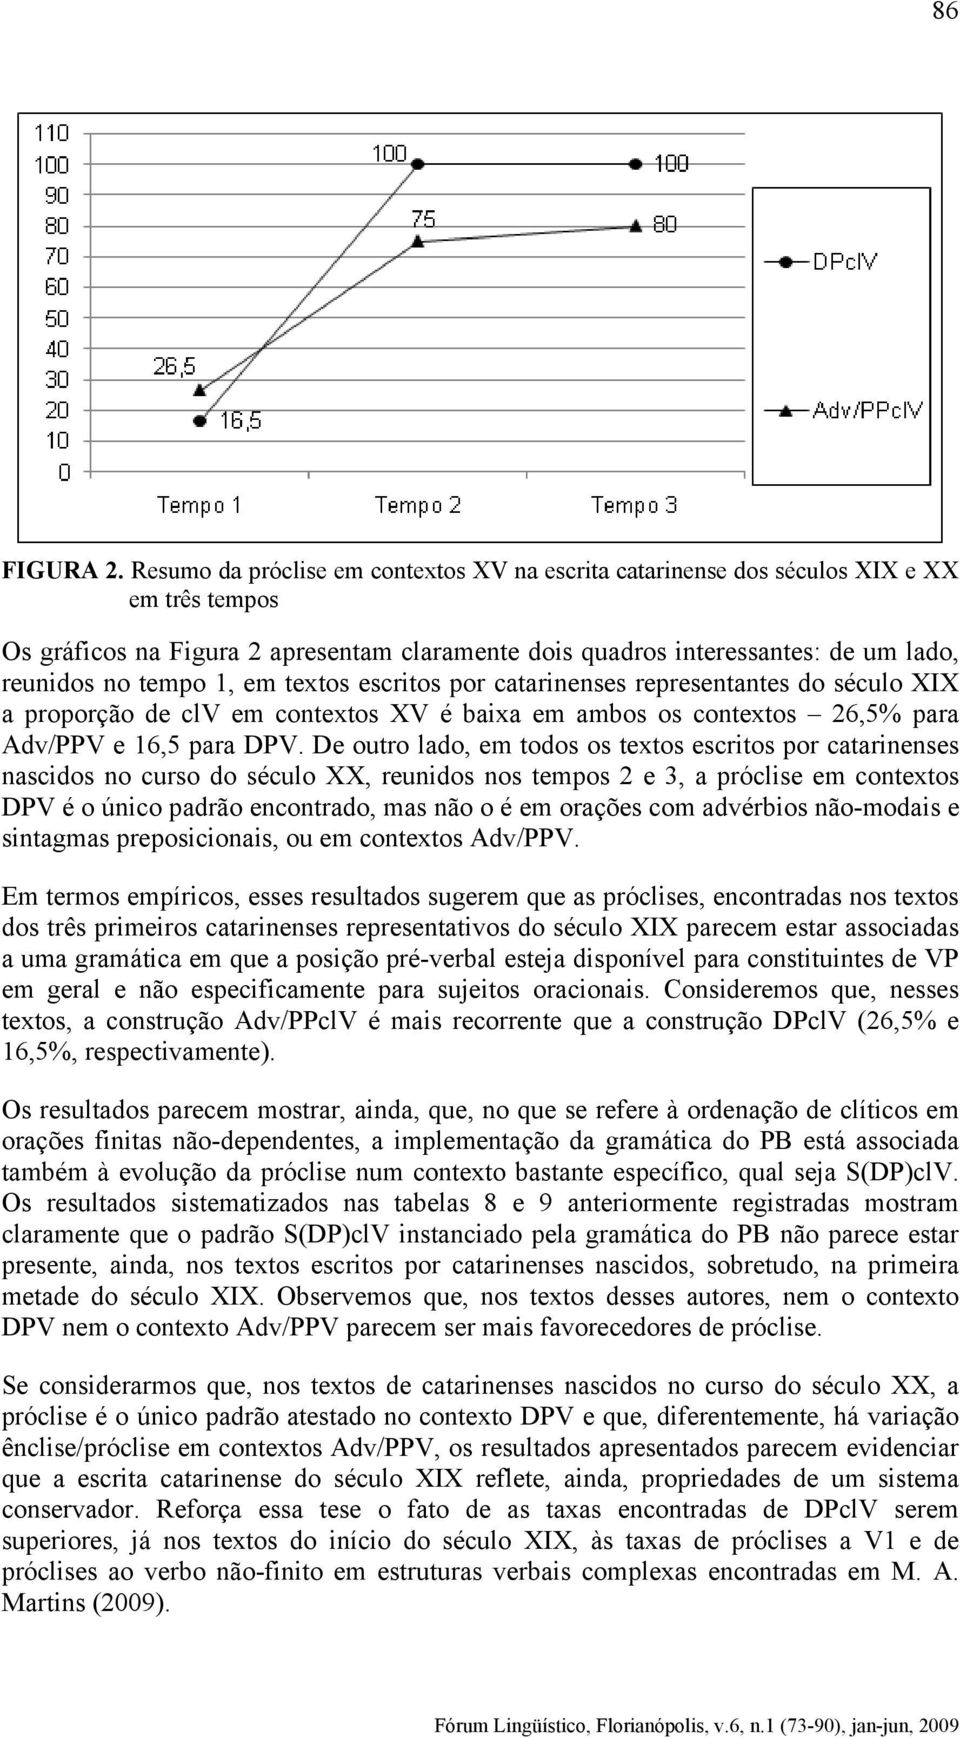 1, em textos escritos por catarinenses representantes do século XIX a proporção de clv em contextos XV é baixa em ambos os contextos 26,5% para Adv/PPV e 16,5 para DPV.